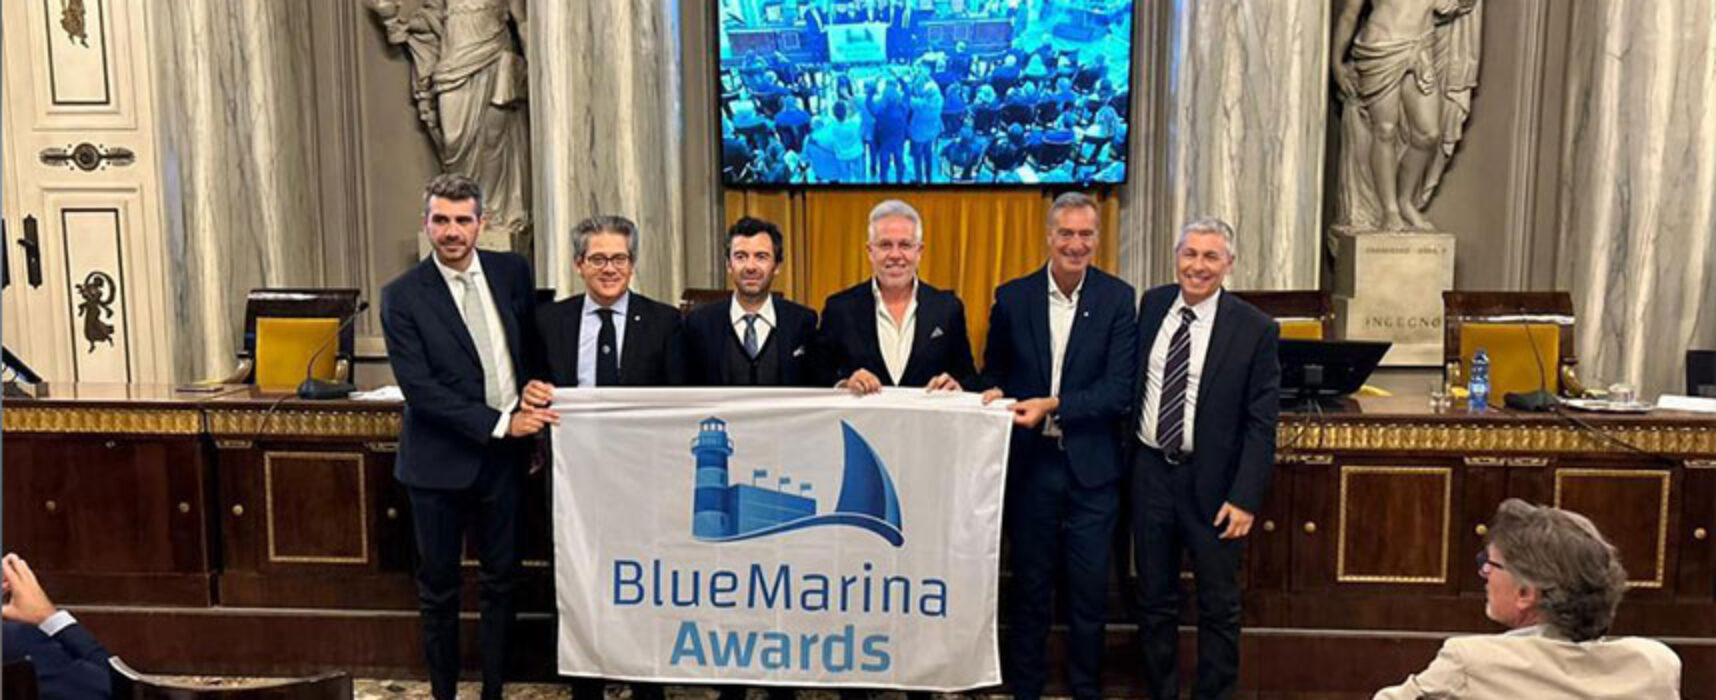 Al porto turistico-marina resort Bisceglie Approdi il Blue Marina Awards di Assonautica